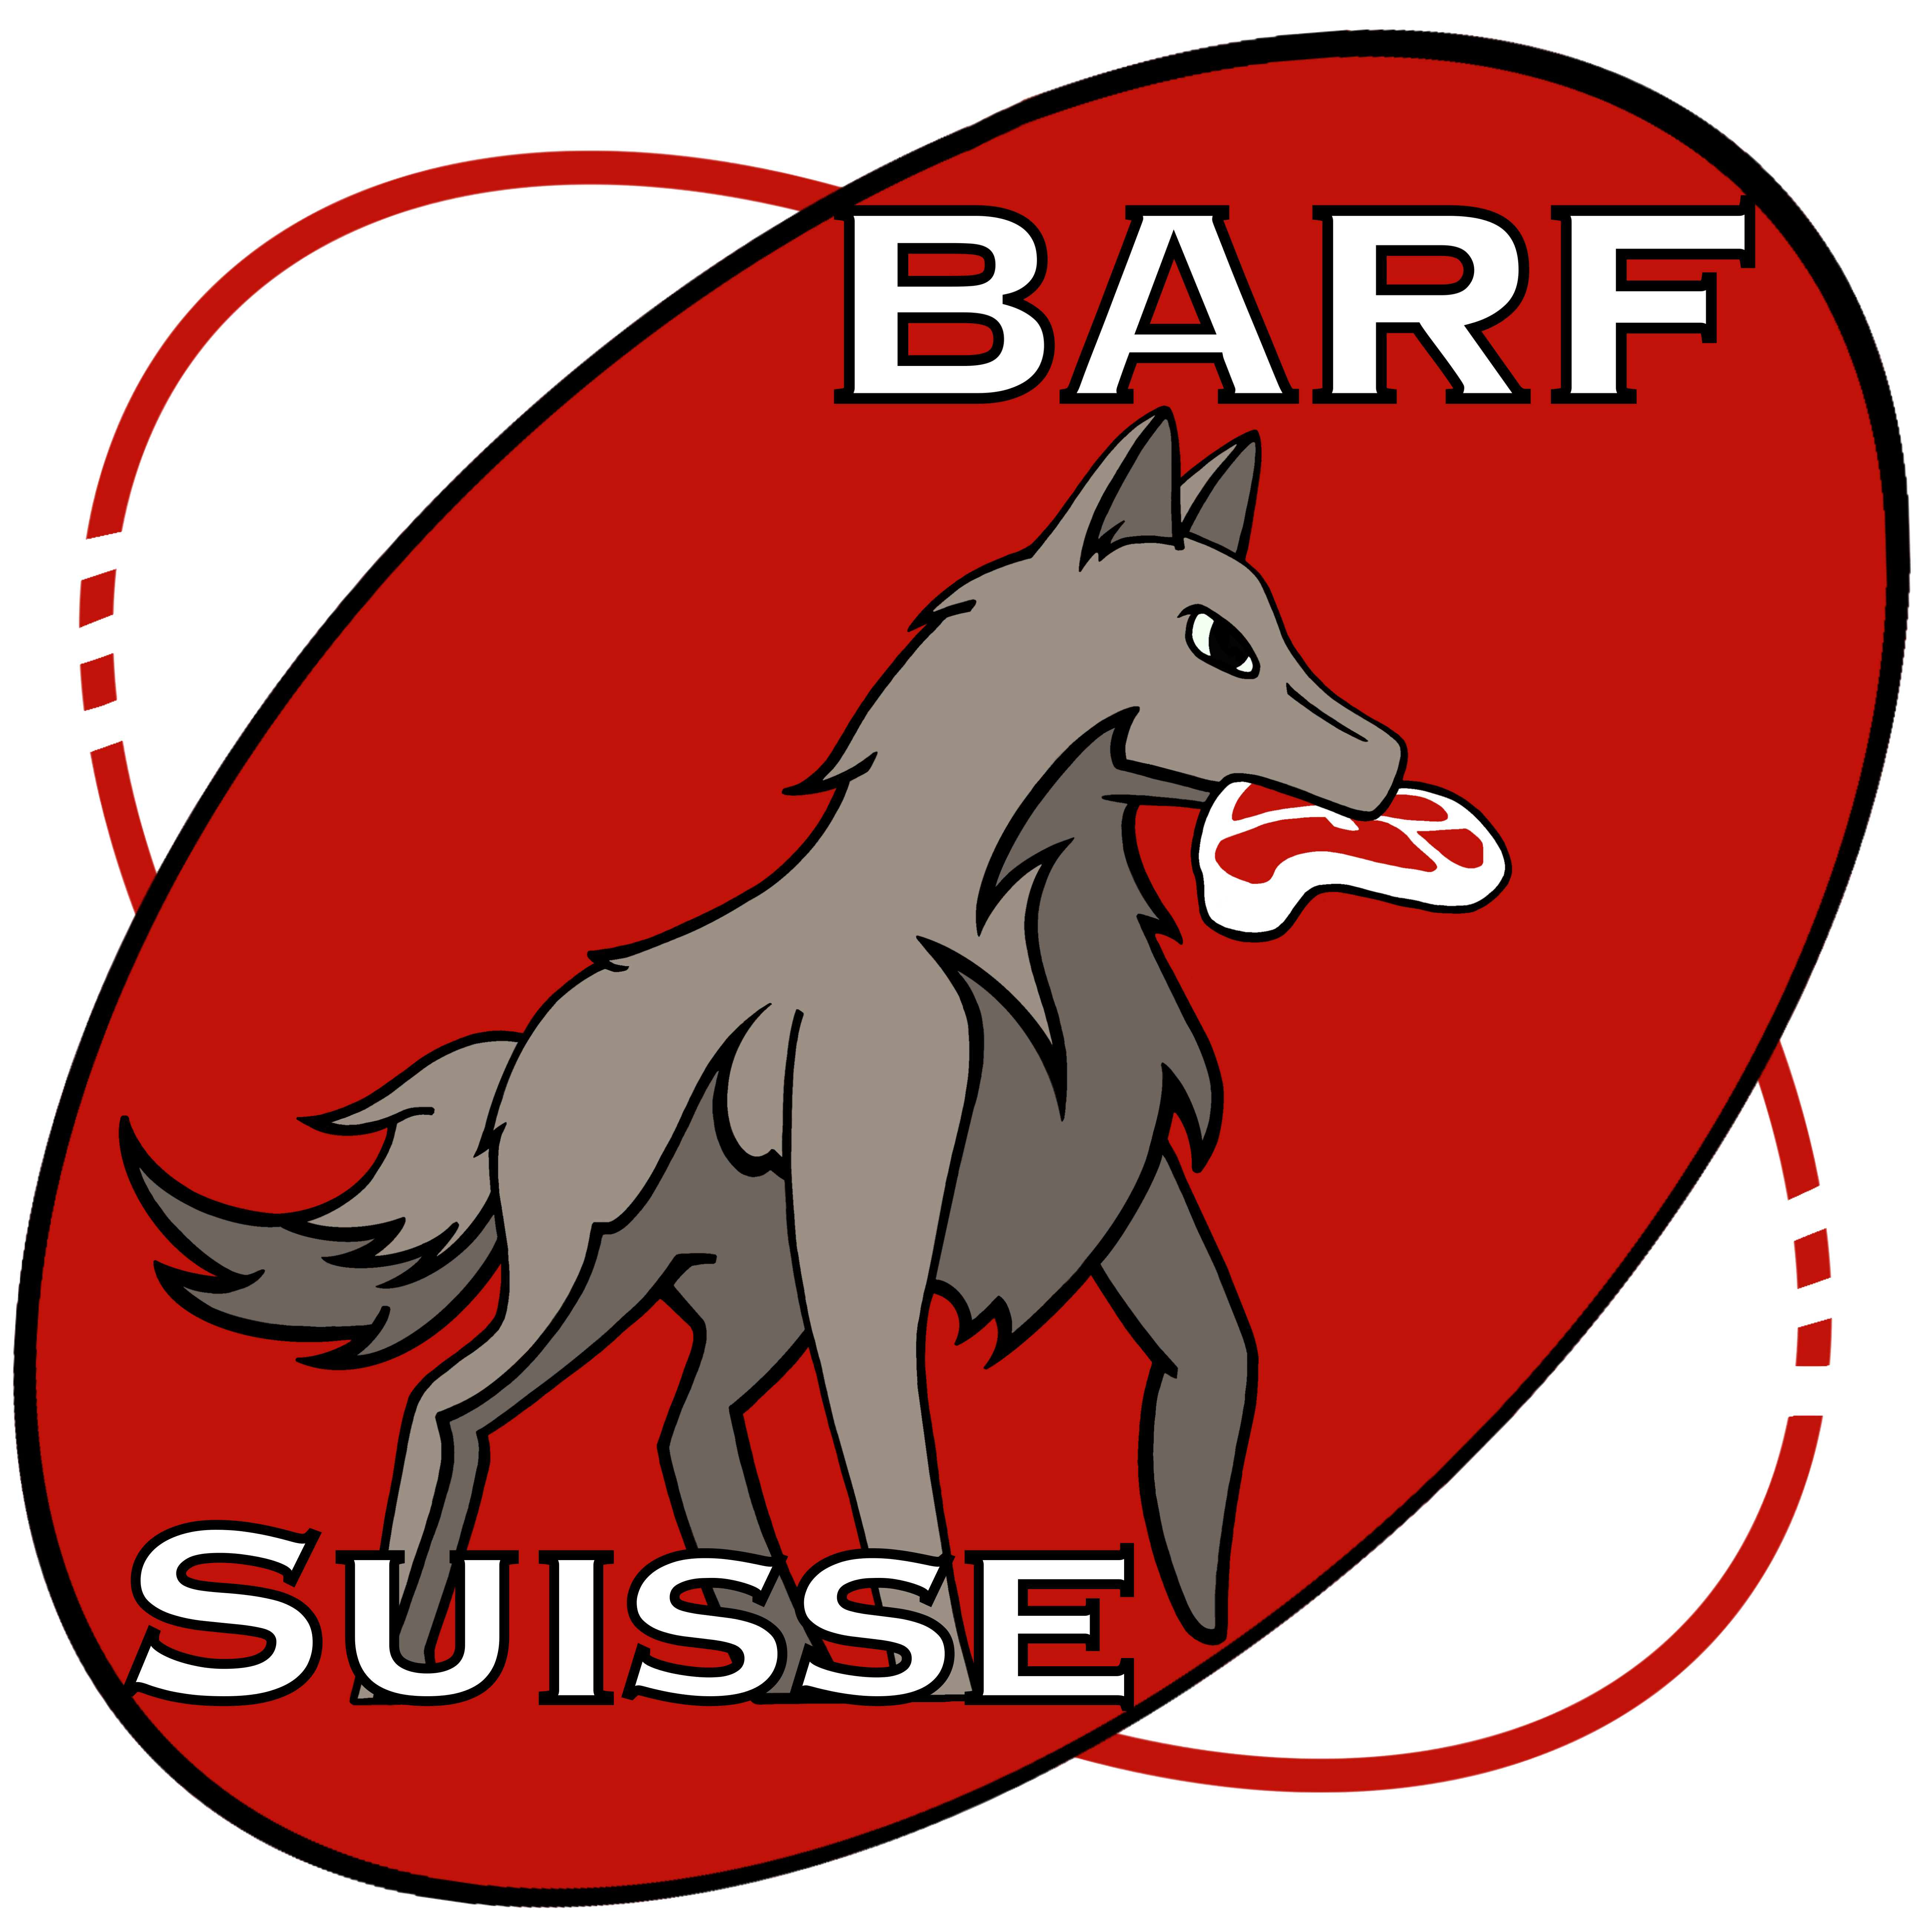 Barf Suisse snc